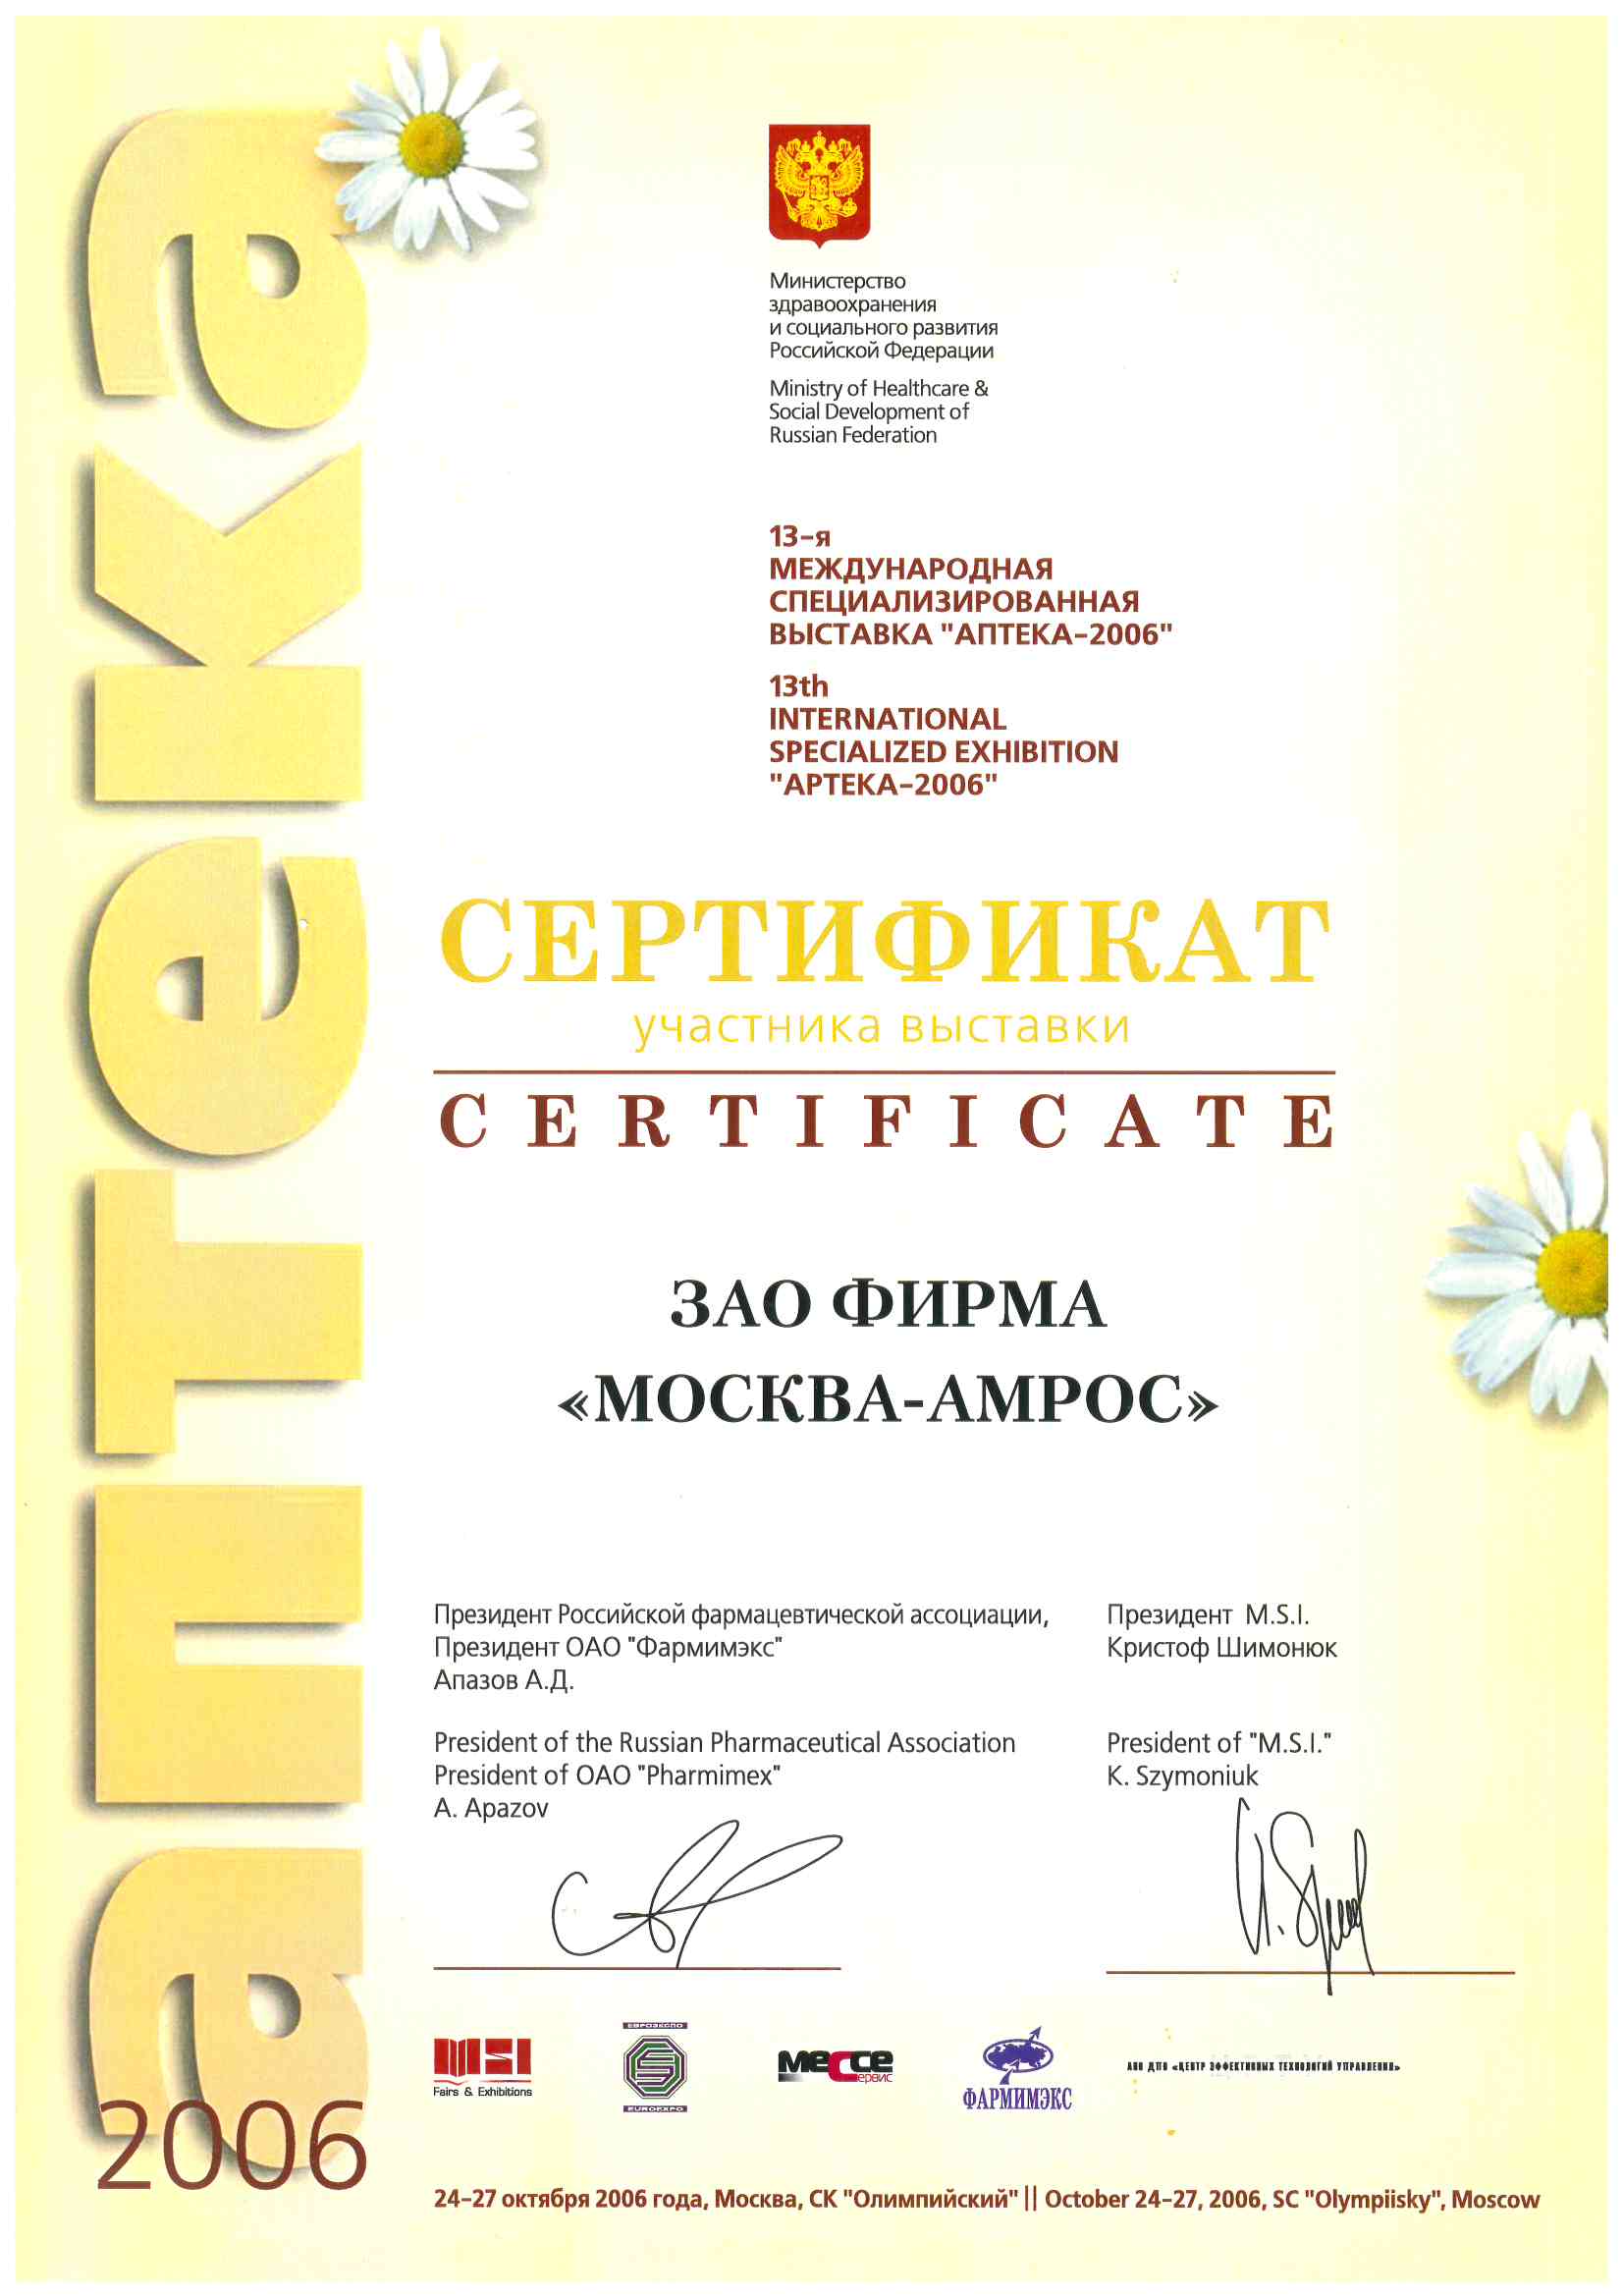 Сертификат участника 13-й международной специализированной выставки «АПТЕКА-2006», 2006 г.